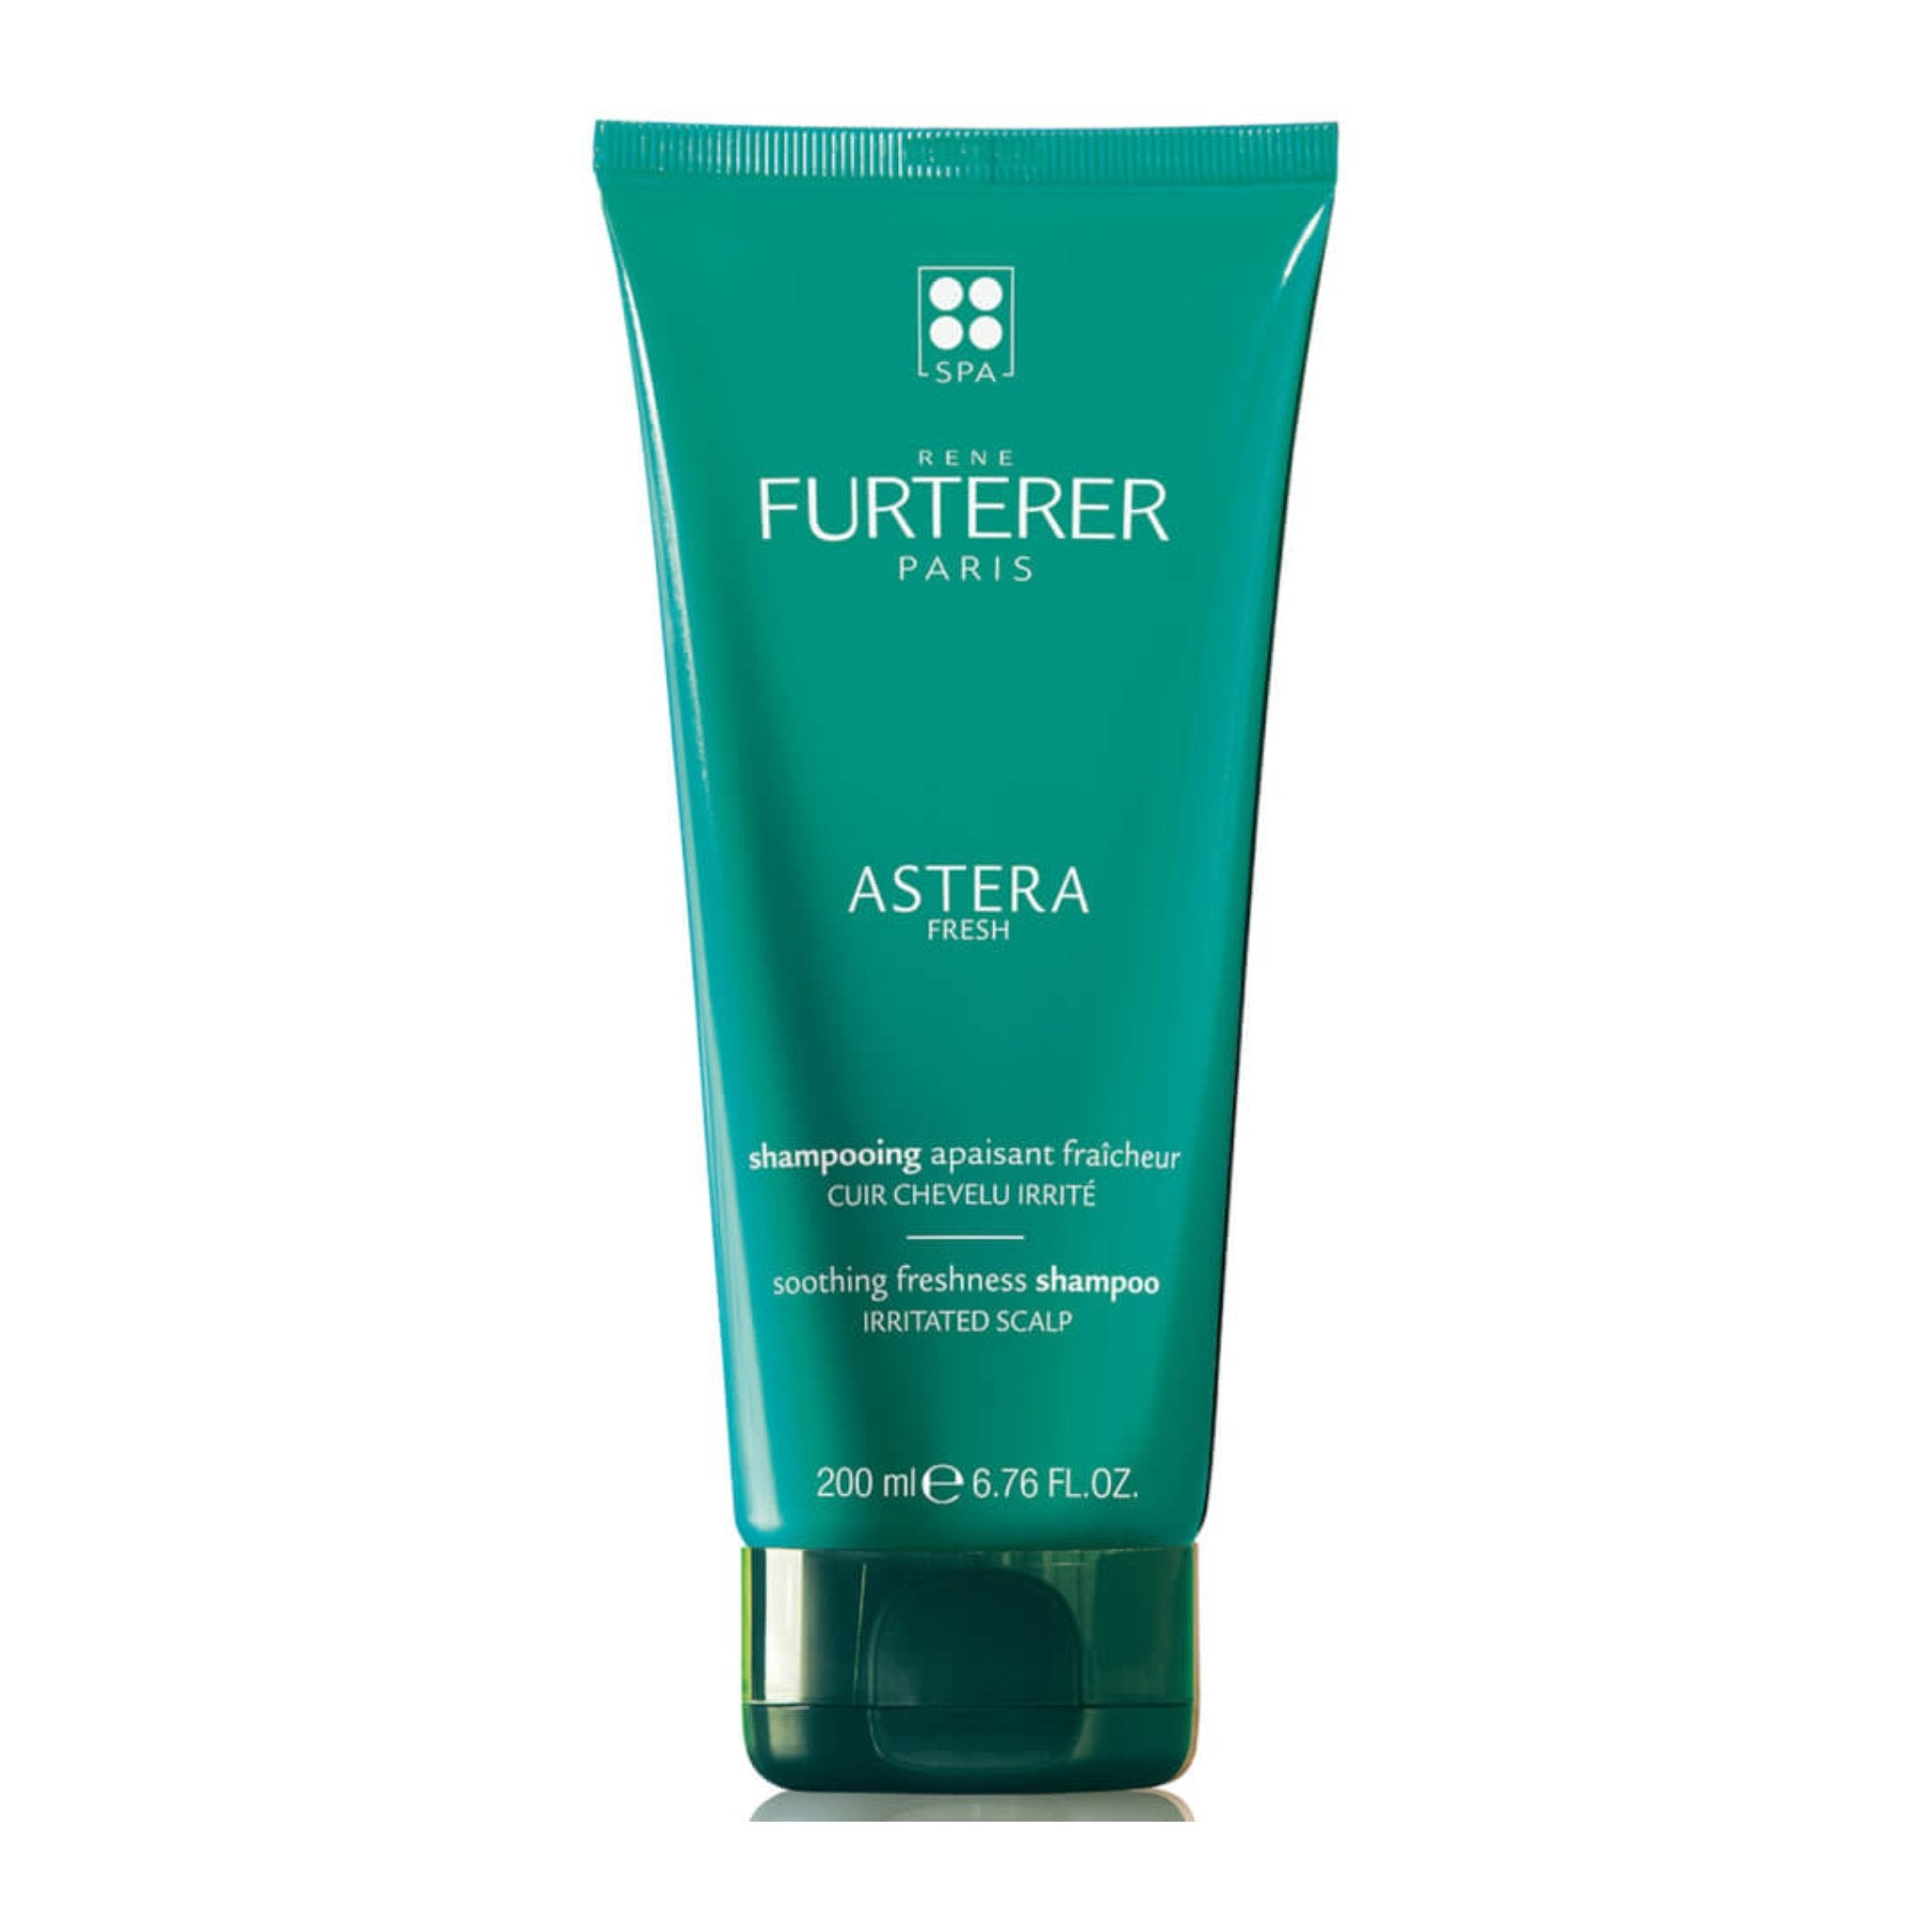 René Furterer. Astera Fresh Shampoing Apaisant Fraîcheur aux Huiles Essentielles - 200 ml - Concept C. Shop